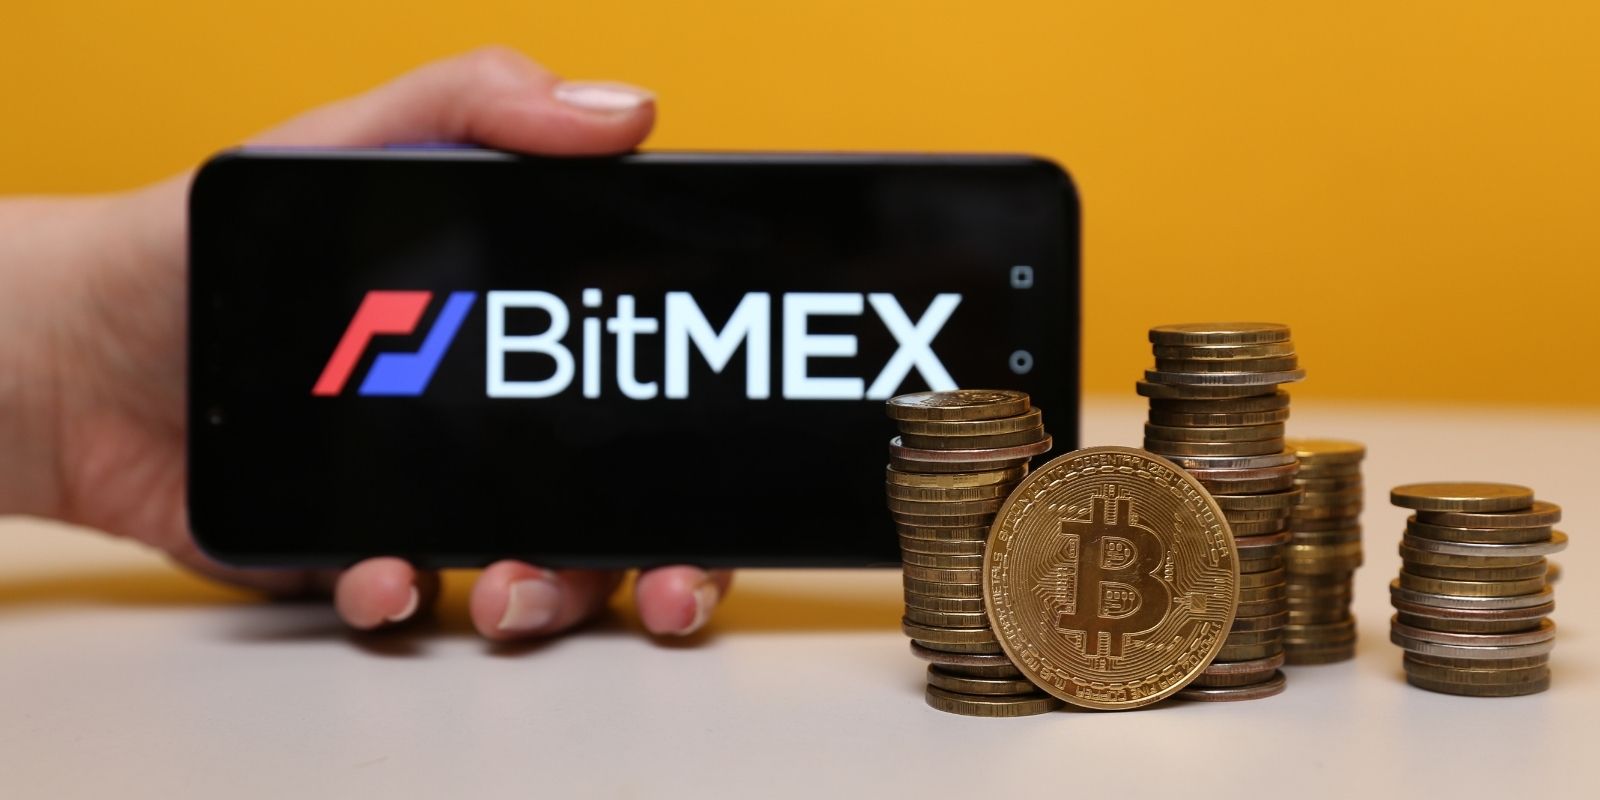 La plateforme BitMEX change de PDG après les poursuites de la justice américaine